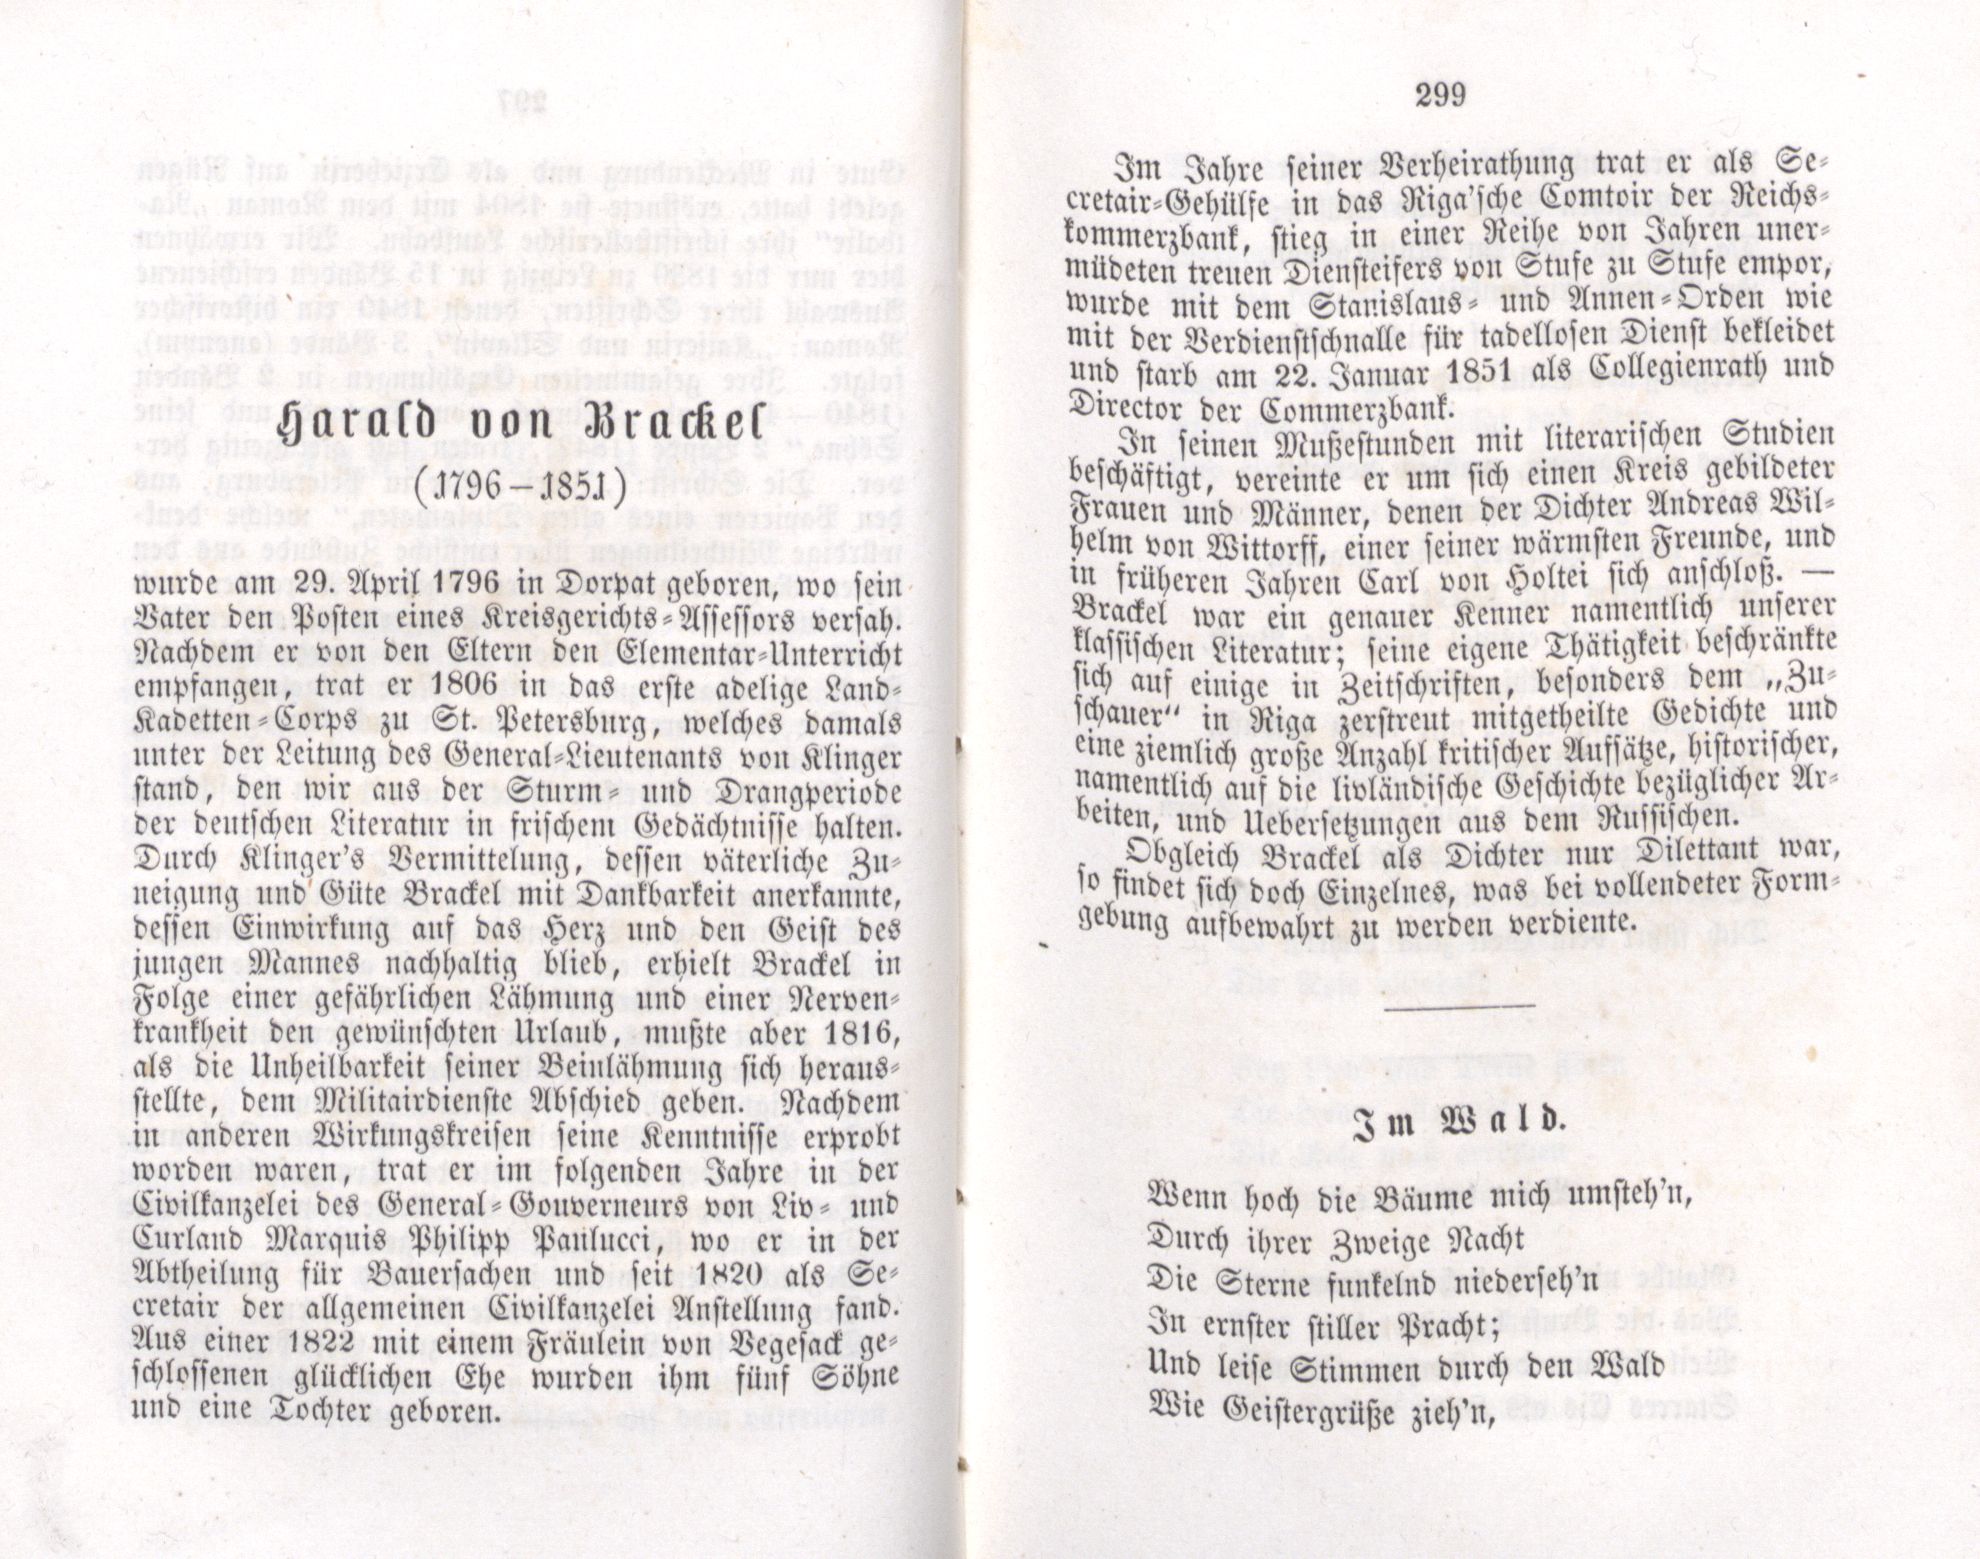 Harald von Brackel (1855) | 1. (298-299) Main body of text